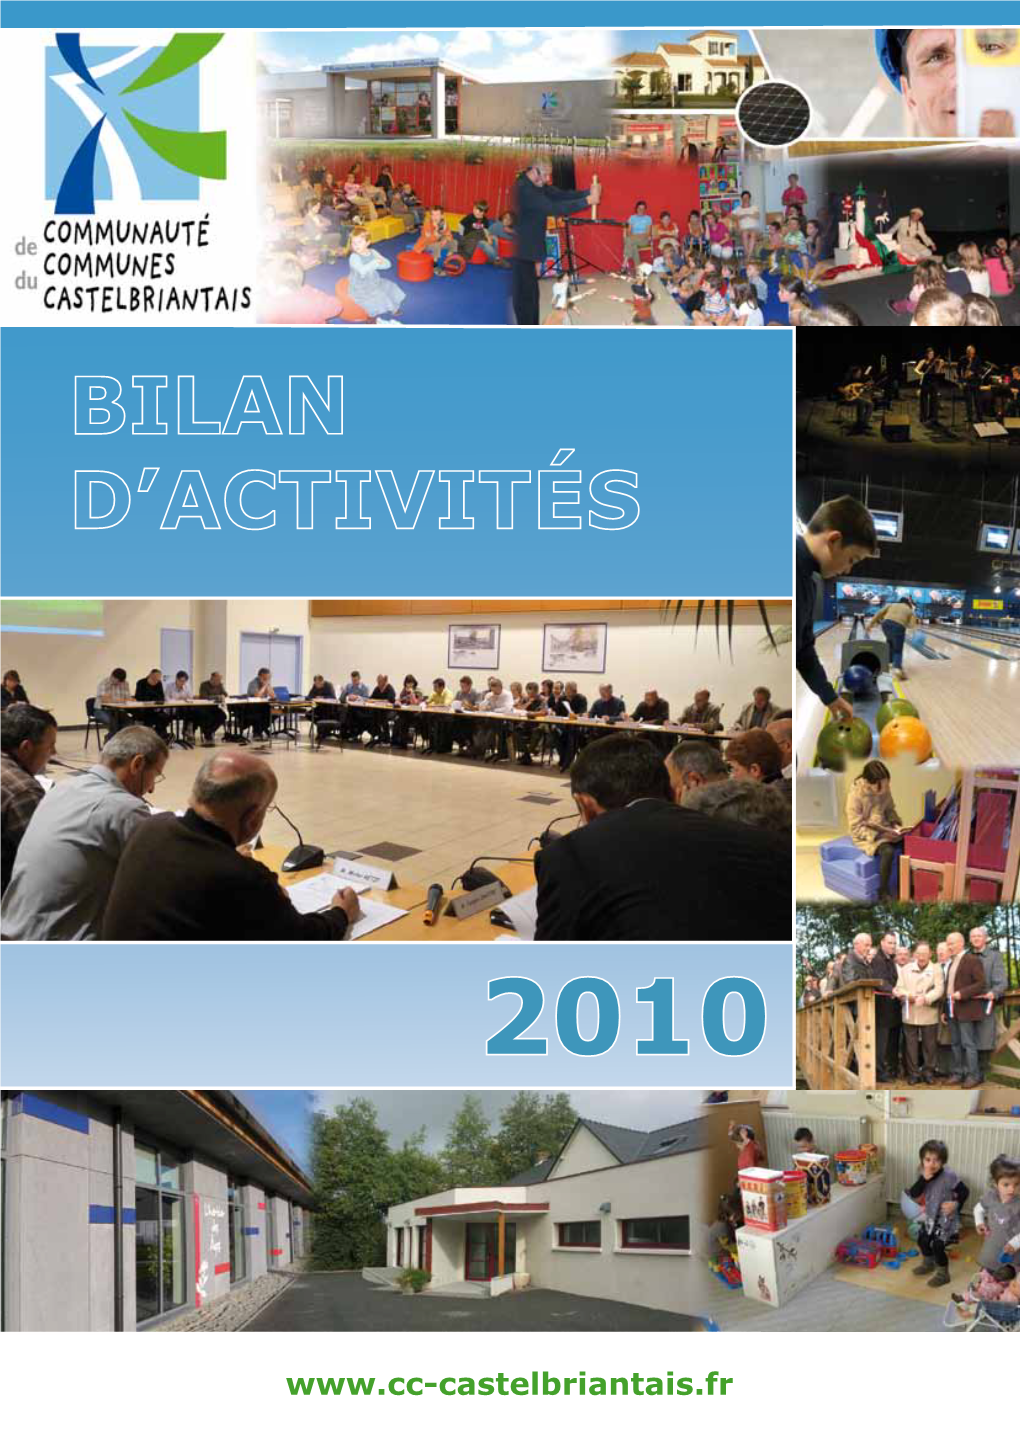 Rapport D'activités 2010